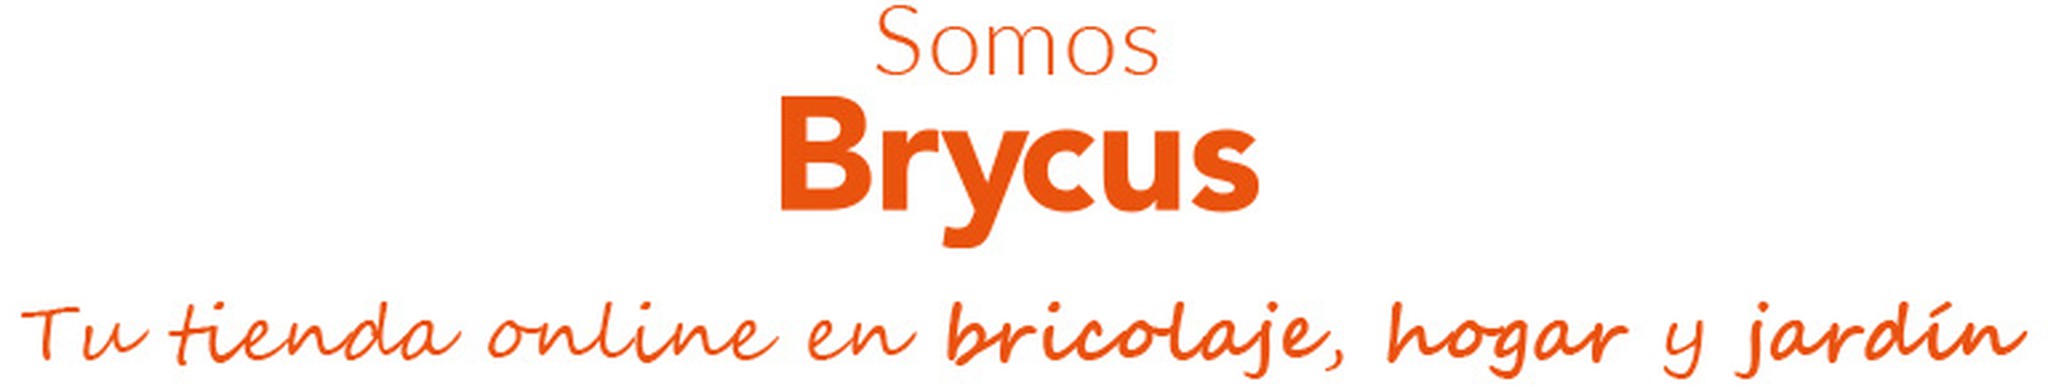 Somos Brycus, tu tienda online de bricolaje, hogar y jardín